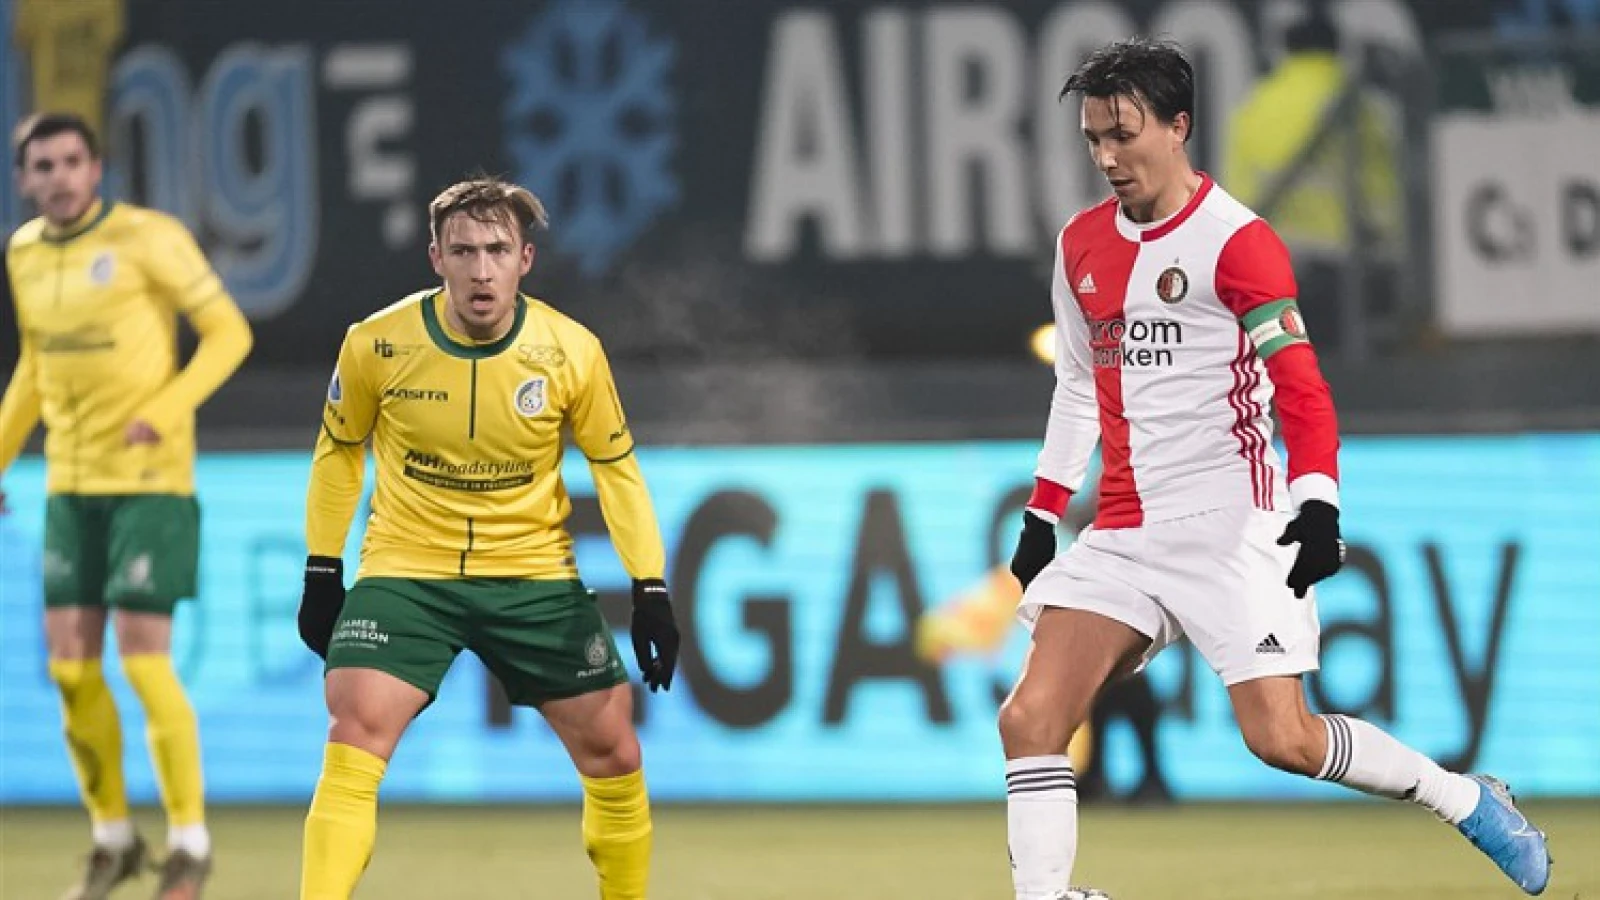 SAMENVATTING | Fortuna Sittard - Feyenoord | Gestaakt bij 1-1 tussenstand